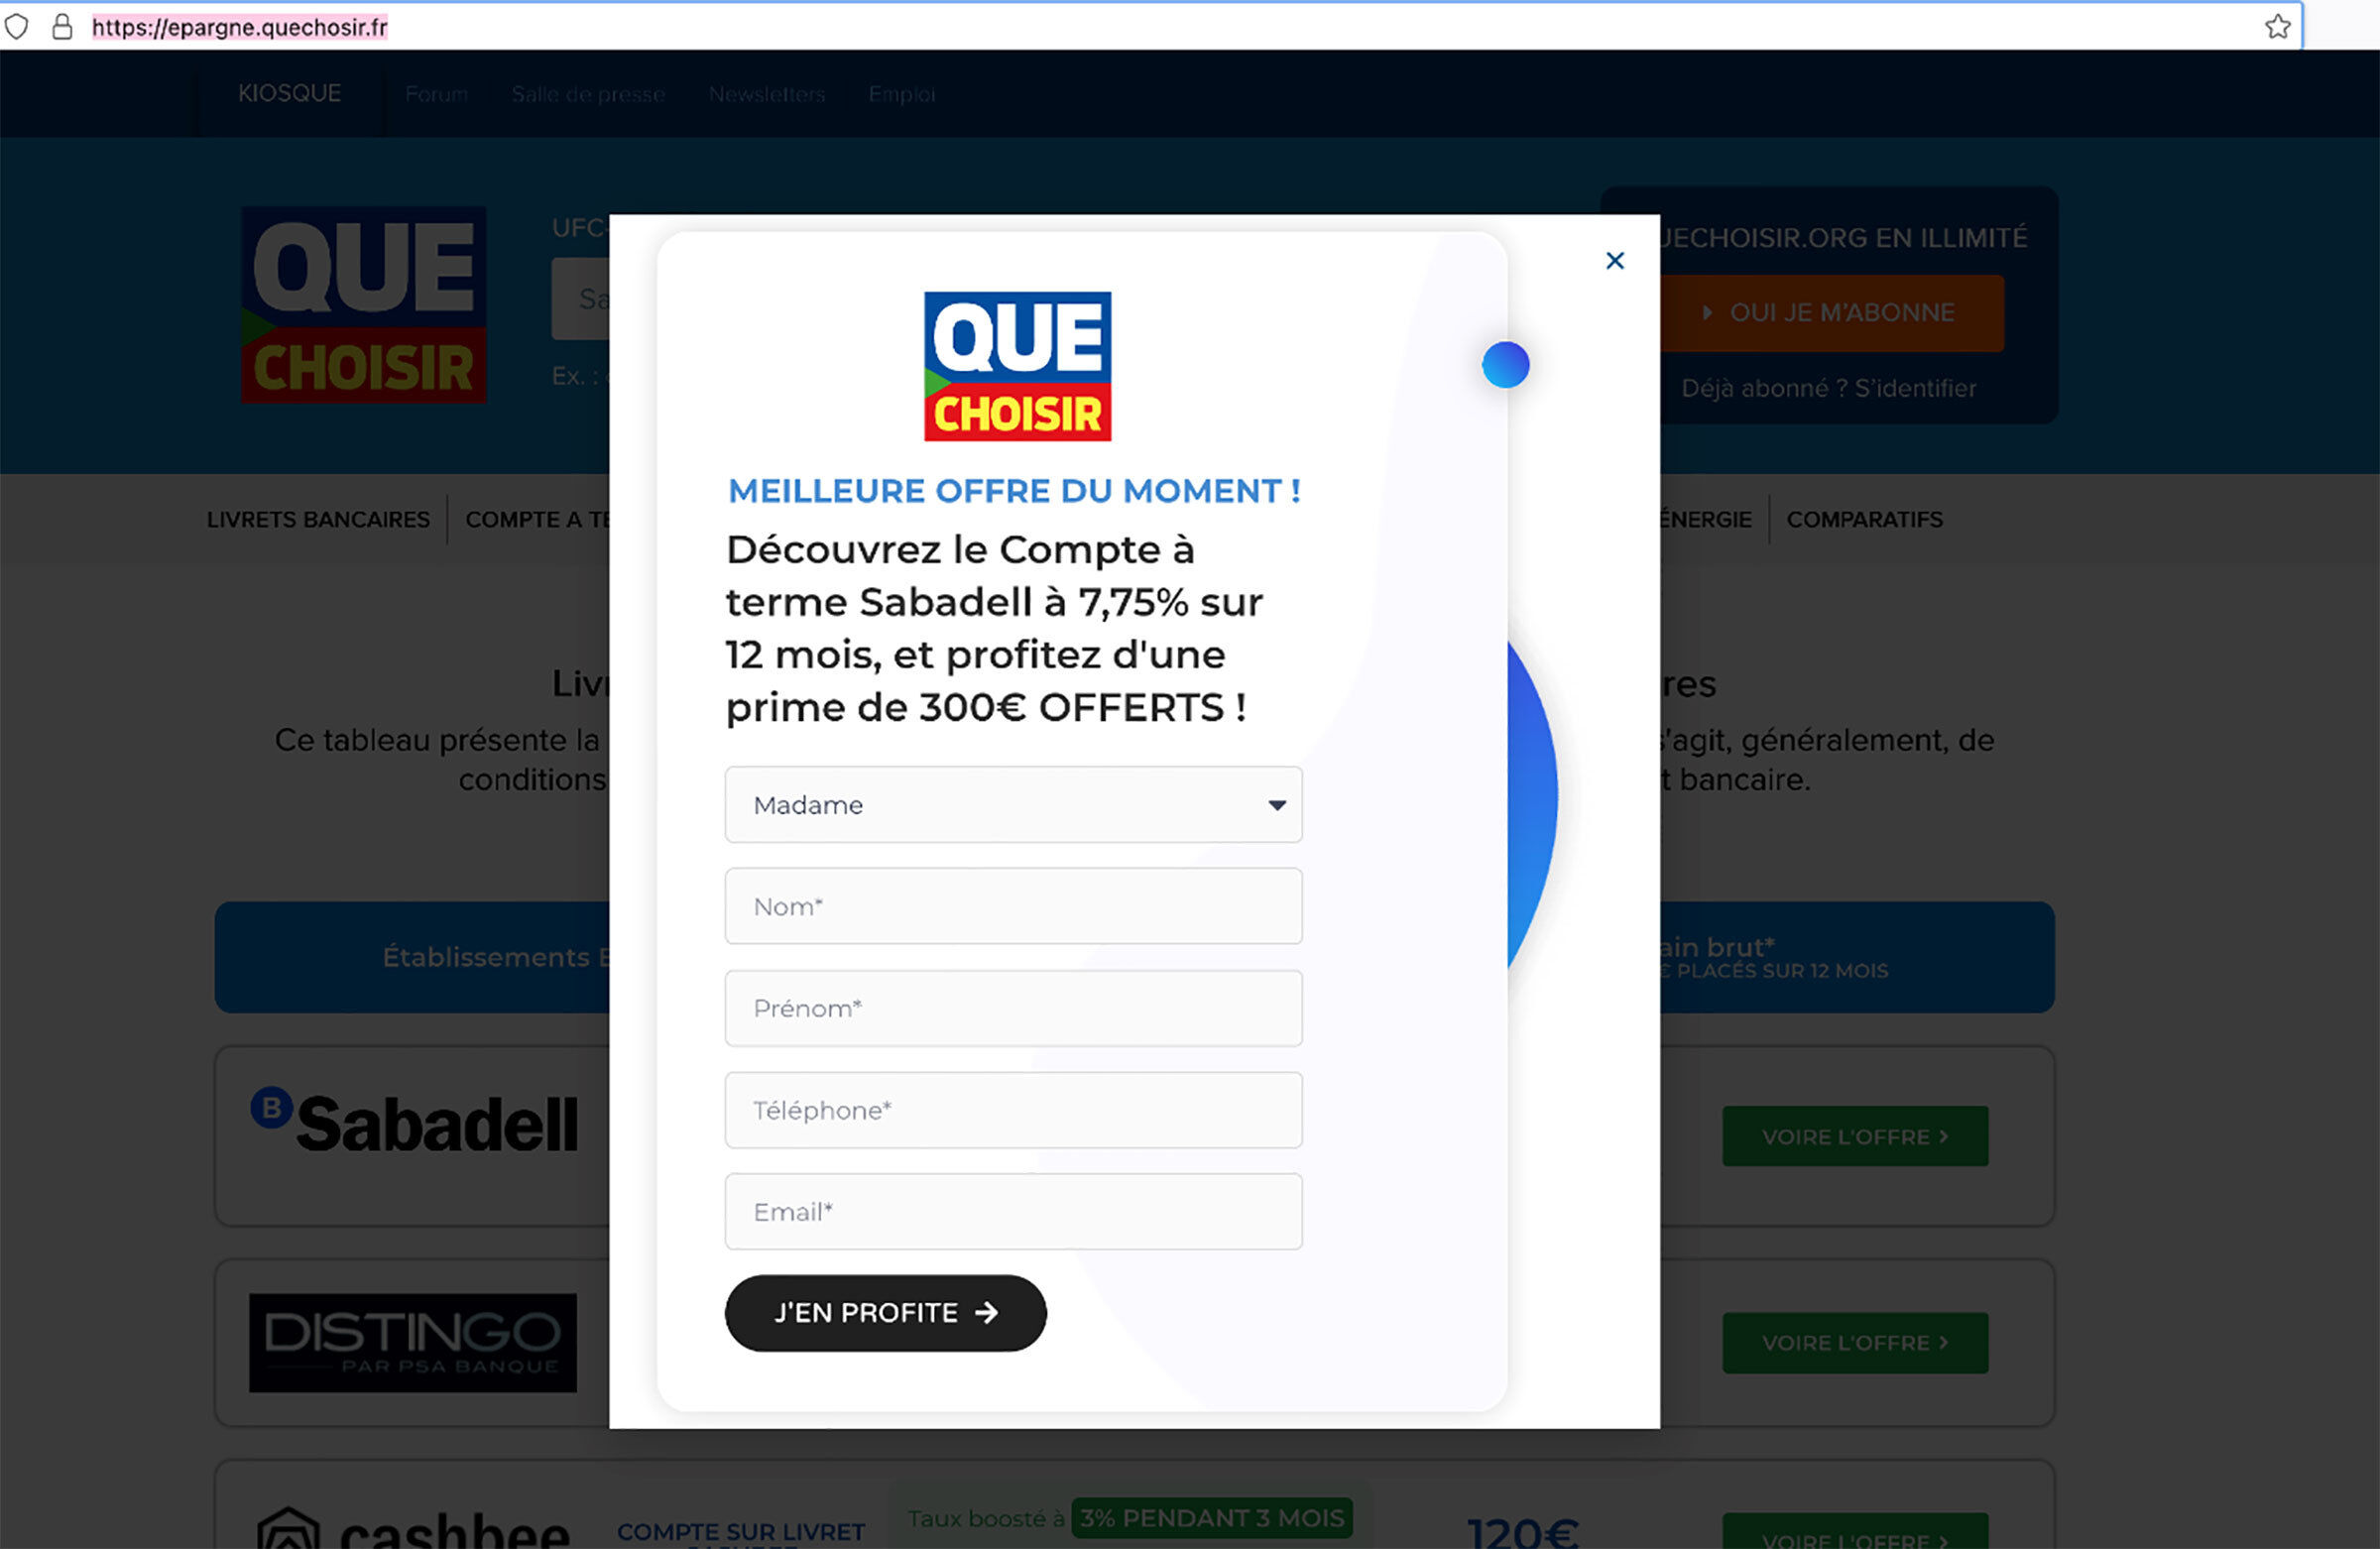 Le faux site de Quechoisir.org - Fenêtre d'offre